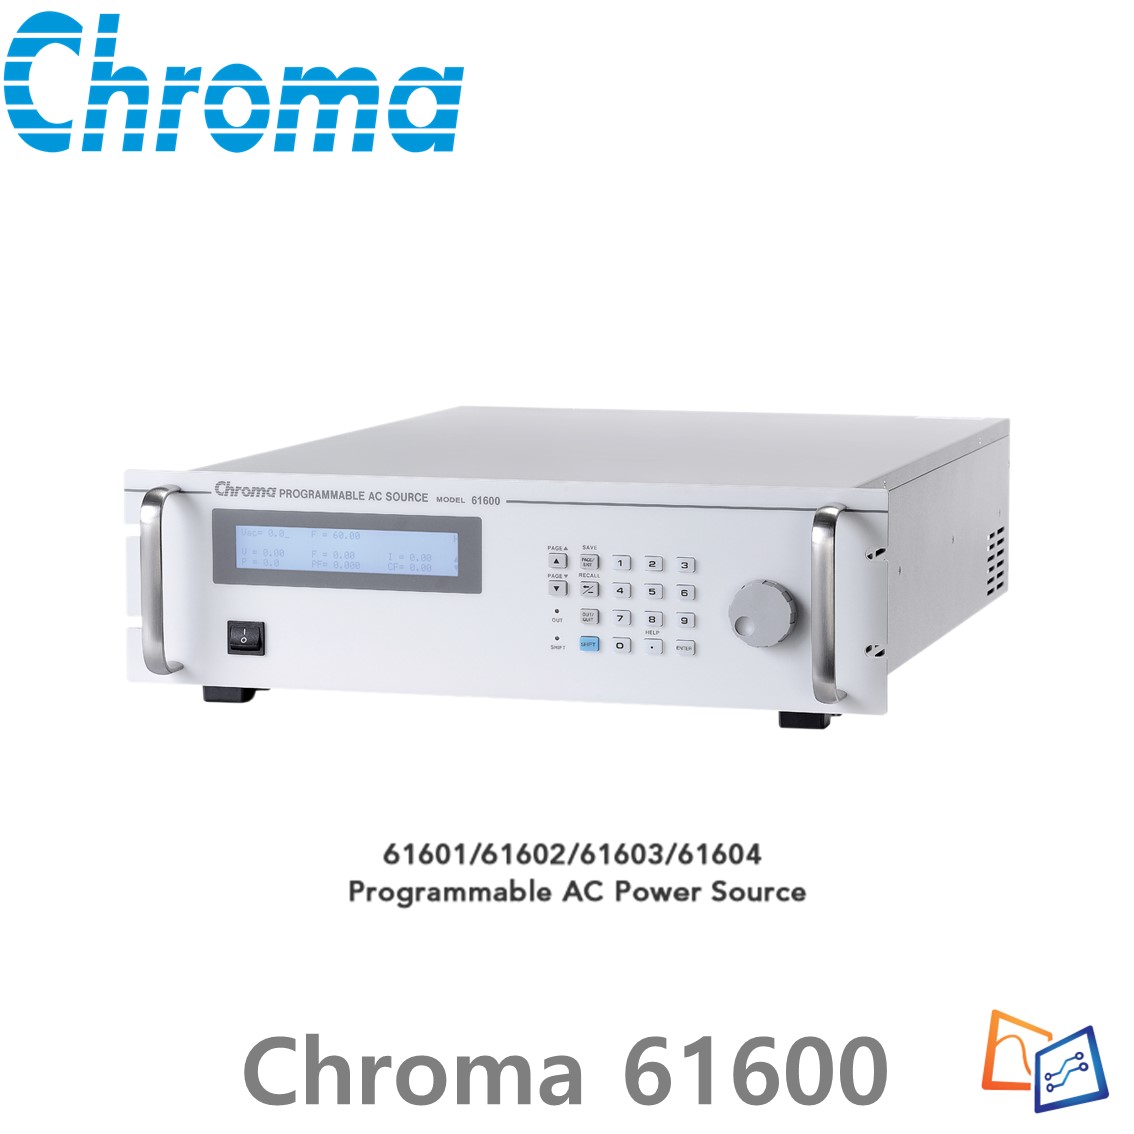 [ Chroma 61600 ] 프로그래머블 AC 전원 공급기 61600 series